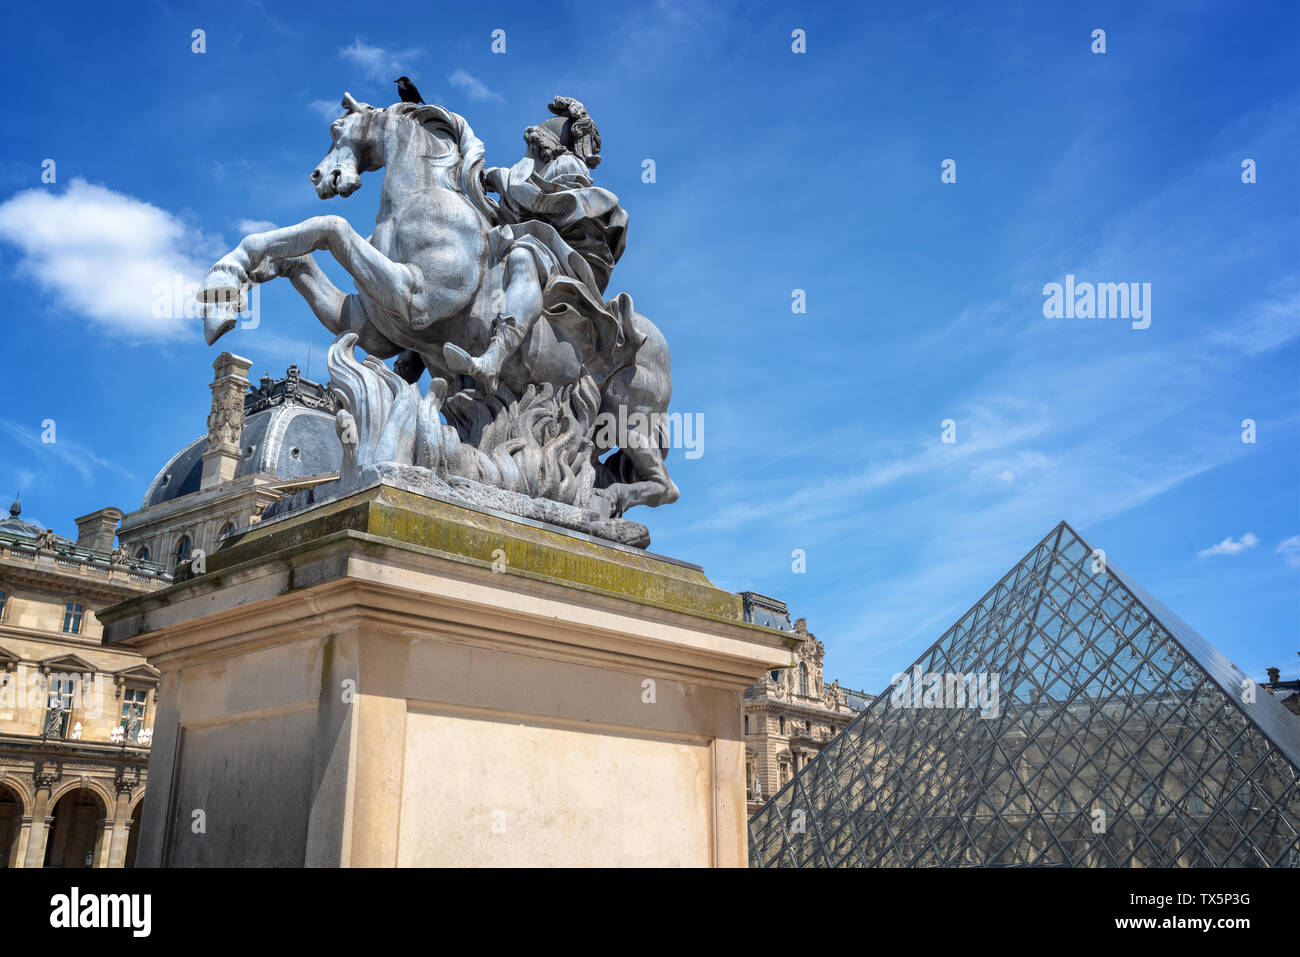 Im Innenhof des Palastes der Louvre mit einem Reiterstandbild von König Ludwig XIV. Stockfoto